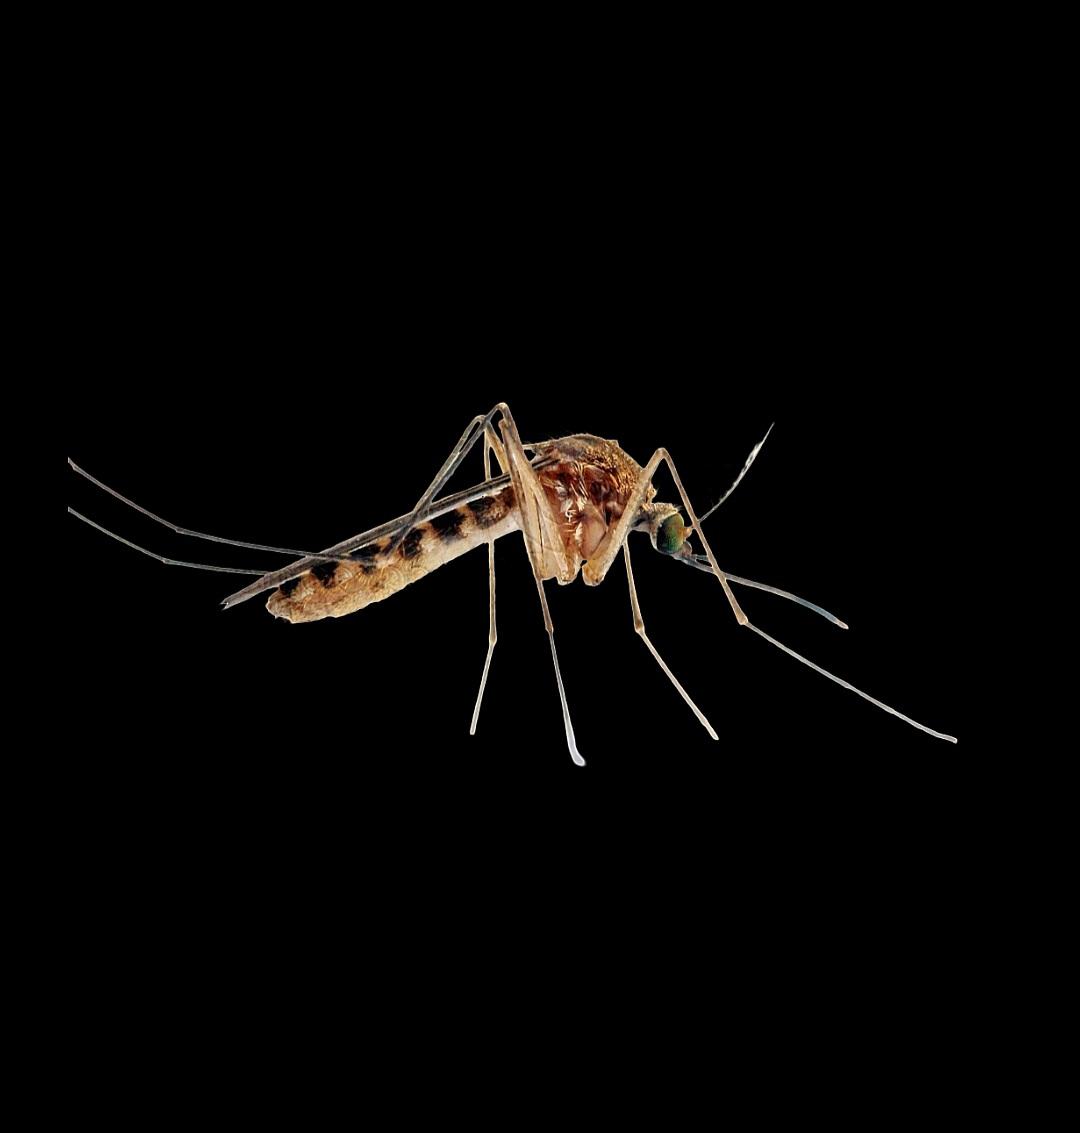 Beauperthuy en palabras del científico Pablo Anduze, fue el pionero en exponer el proceso de la transmisión de la fiebre amarilla y nó Finlay, a quien endilgan tal trascendental hecho.

En su honor sería nombrado un mosquito venezolano, el -Culex beauperthuyi- (Anduze, 1946)